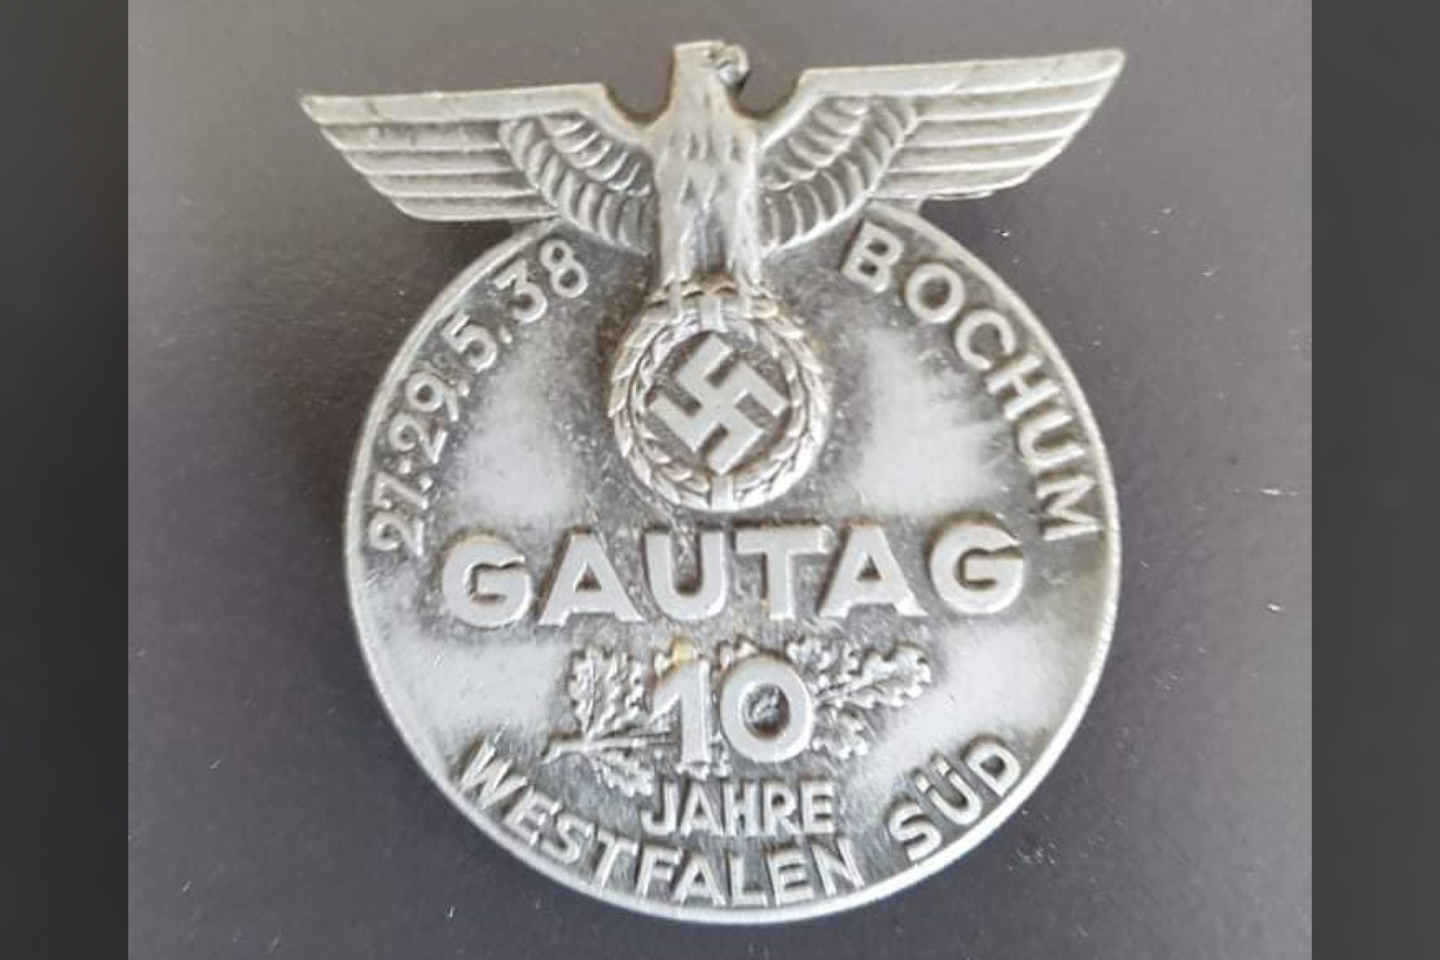  Tarp radinių yra nacių ženkleliai bei medaliai, papuošti partijos emblemomis - tokiomis kaip ereliai ir svastikos.<br> Stadtarchiv Hagen nuotr.